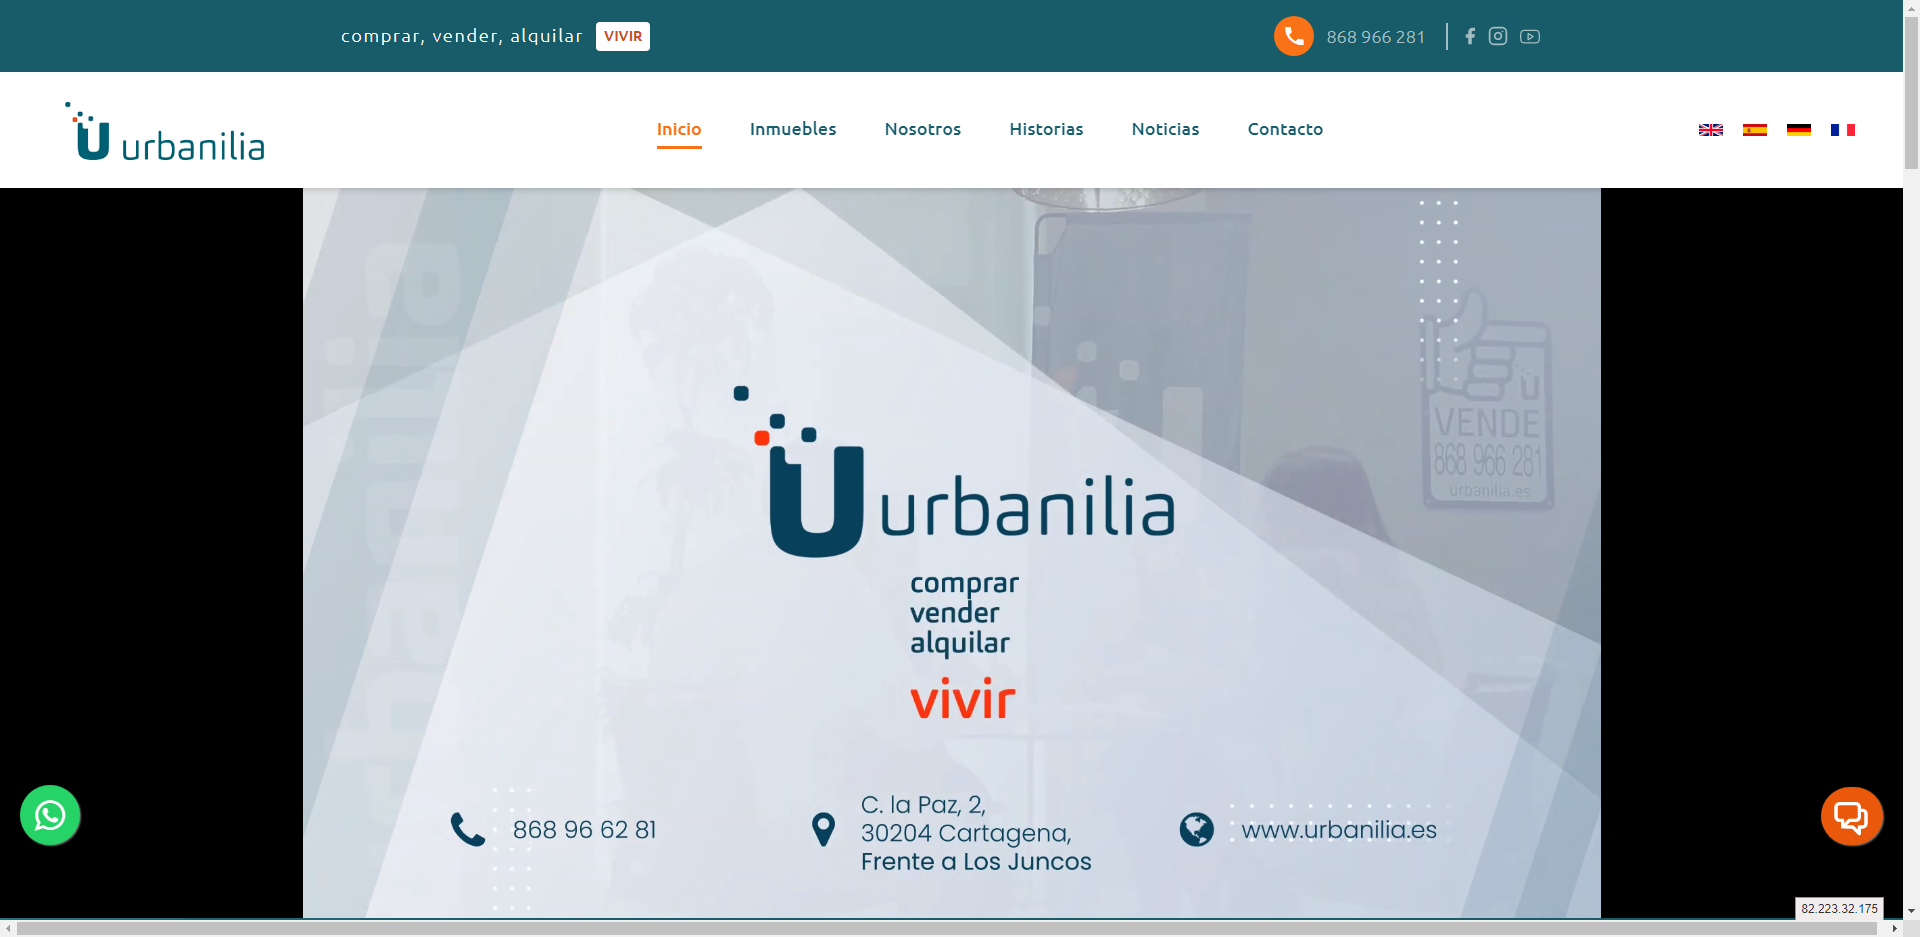 (c) Urbanilia.es